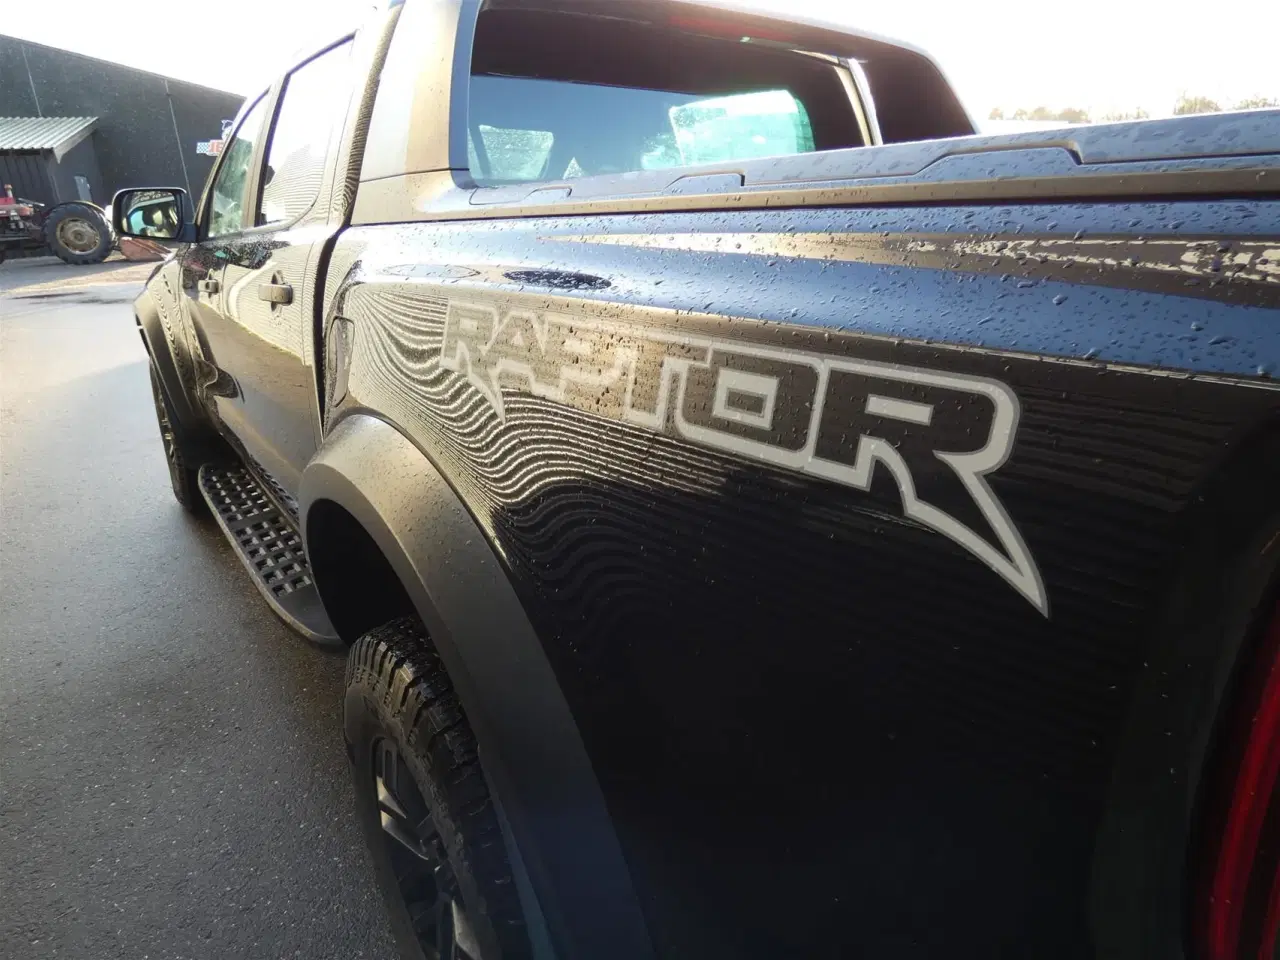 Billede 7 - Ford Ranger 3200kg 2,0 EcoBlue Bi-turbo Raptor 4x4 213HK DobKab 10g Aut.